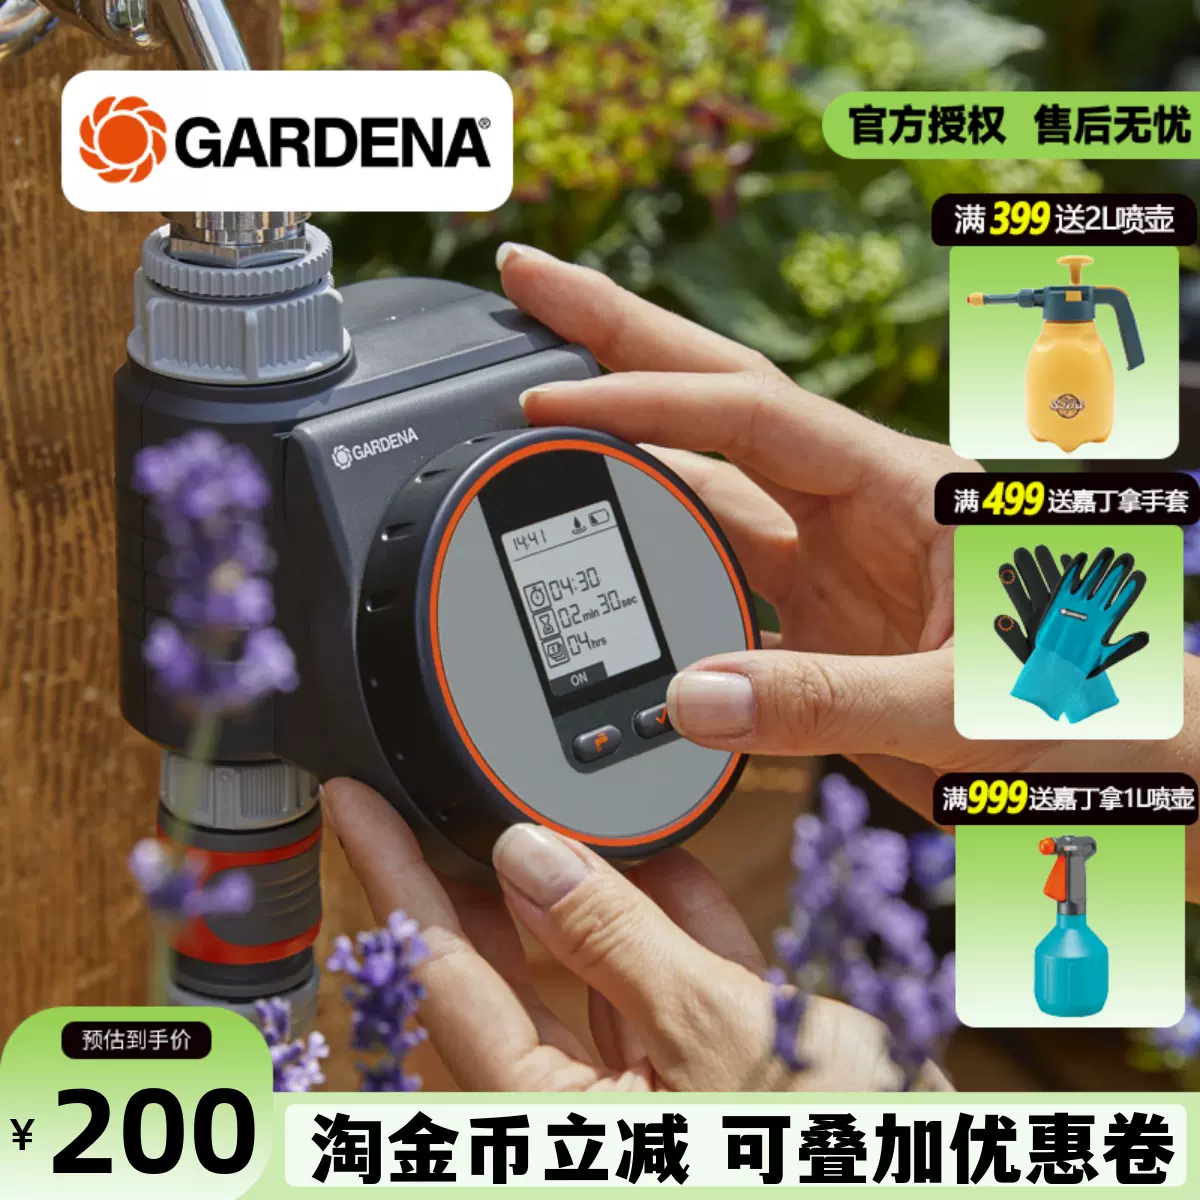 德国嘉丁拿GARDENA花园自动定时浇水控制器可配自动6路水流分配器